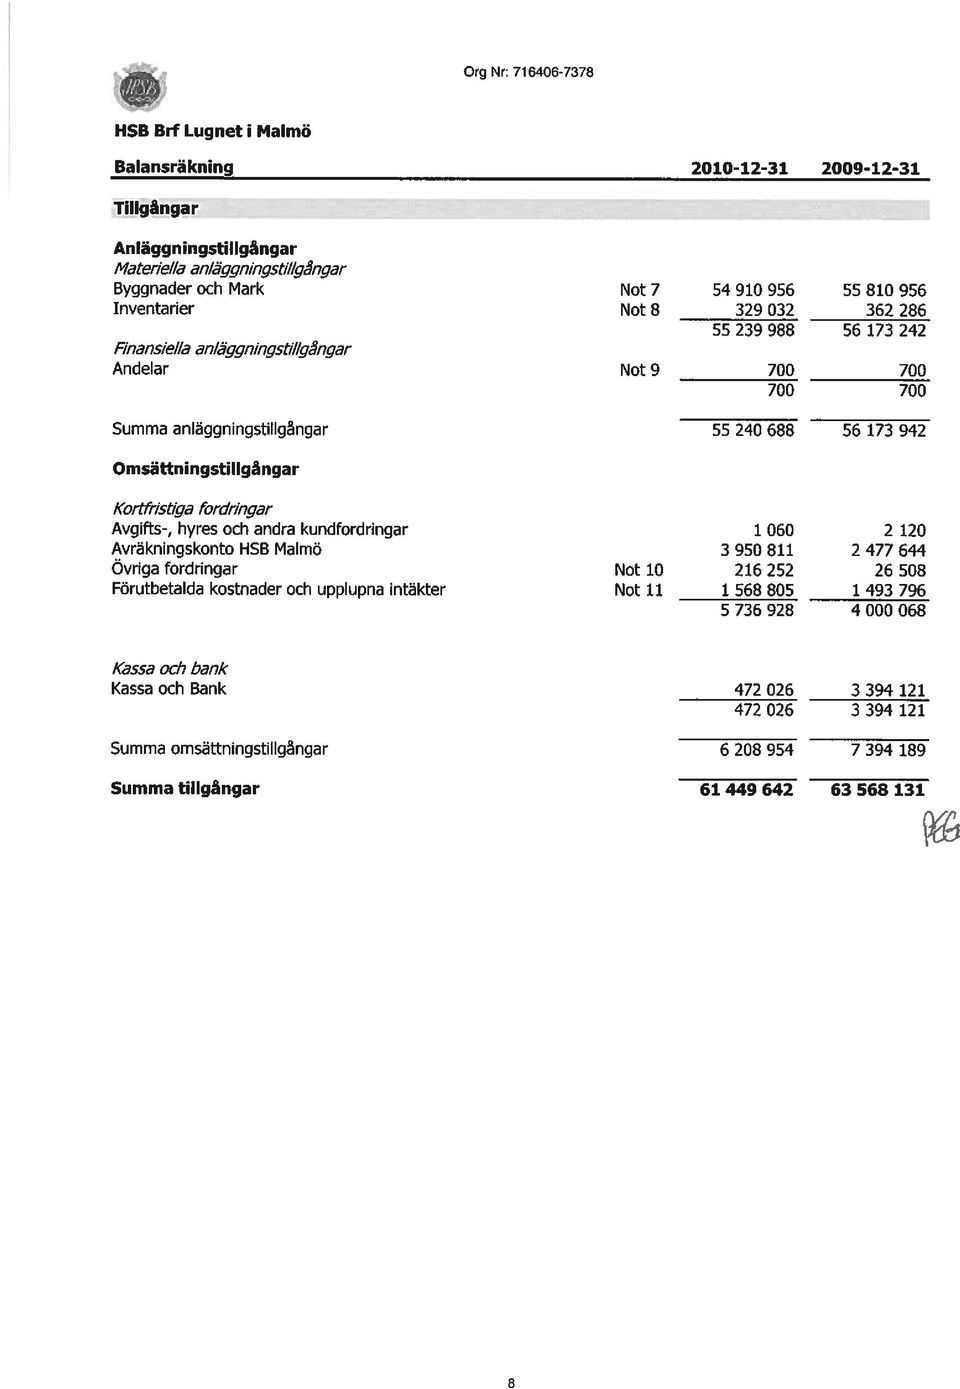 Kortfrlsti~a fordringar Avgifts-, hyres och andra kundfordringar Avräkningskonto HSB Malmö Ovriga fordringar Förutbetalda kostnader och upplupna intäkter Not 10 Not 11 1060 2120 3950811 2477644